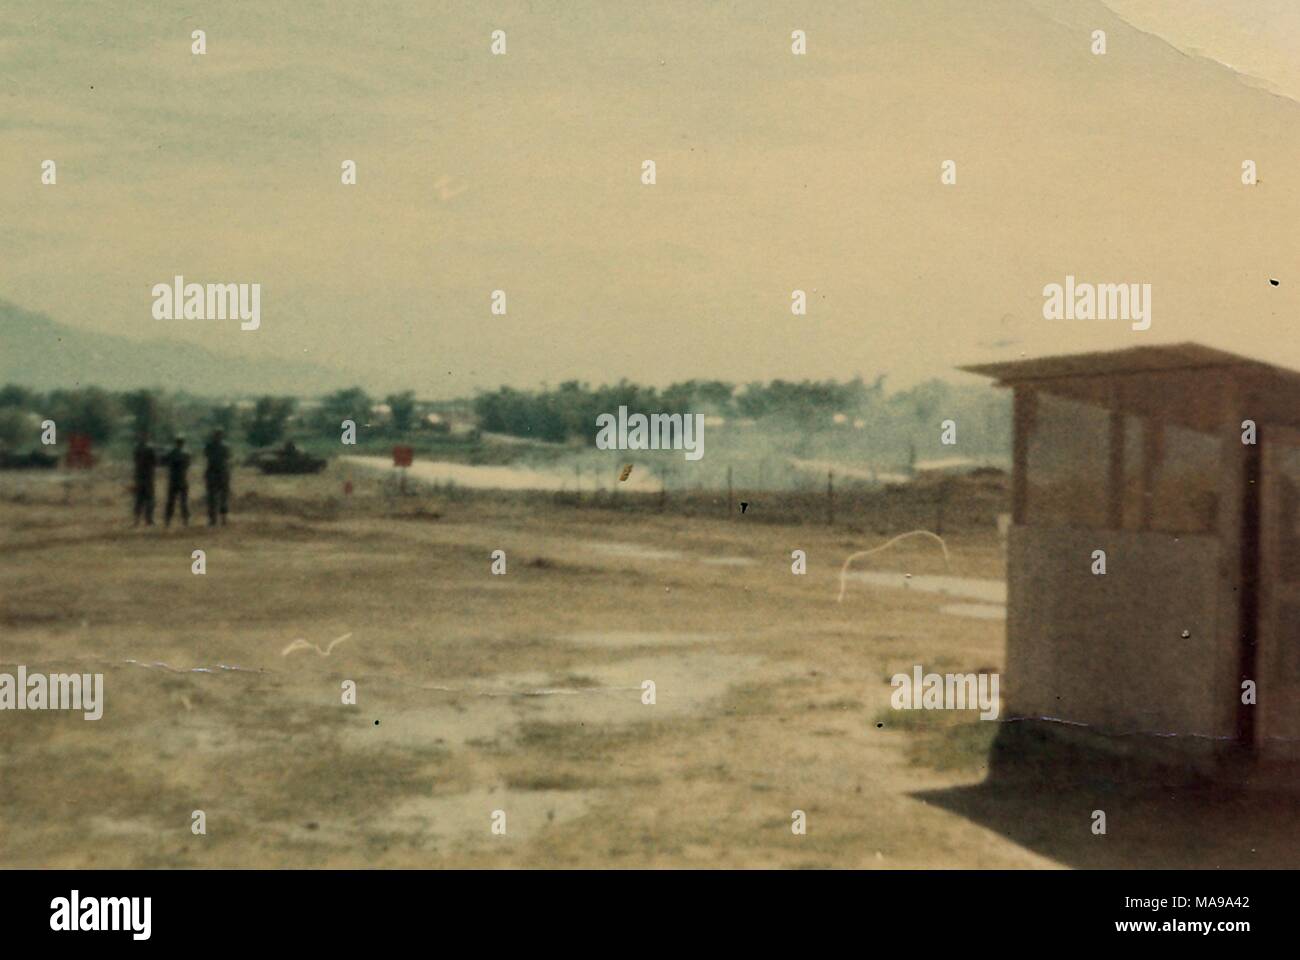 Photographie couleur montrant un poste de garde à la droite d'un champ boueux, avec trois chiffres (soldats sans doute) drapeaux, et un réservoir dans la distance, photographié au Vietnam pendant la guerre du Vietnam, 1968. () Banque D'Images